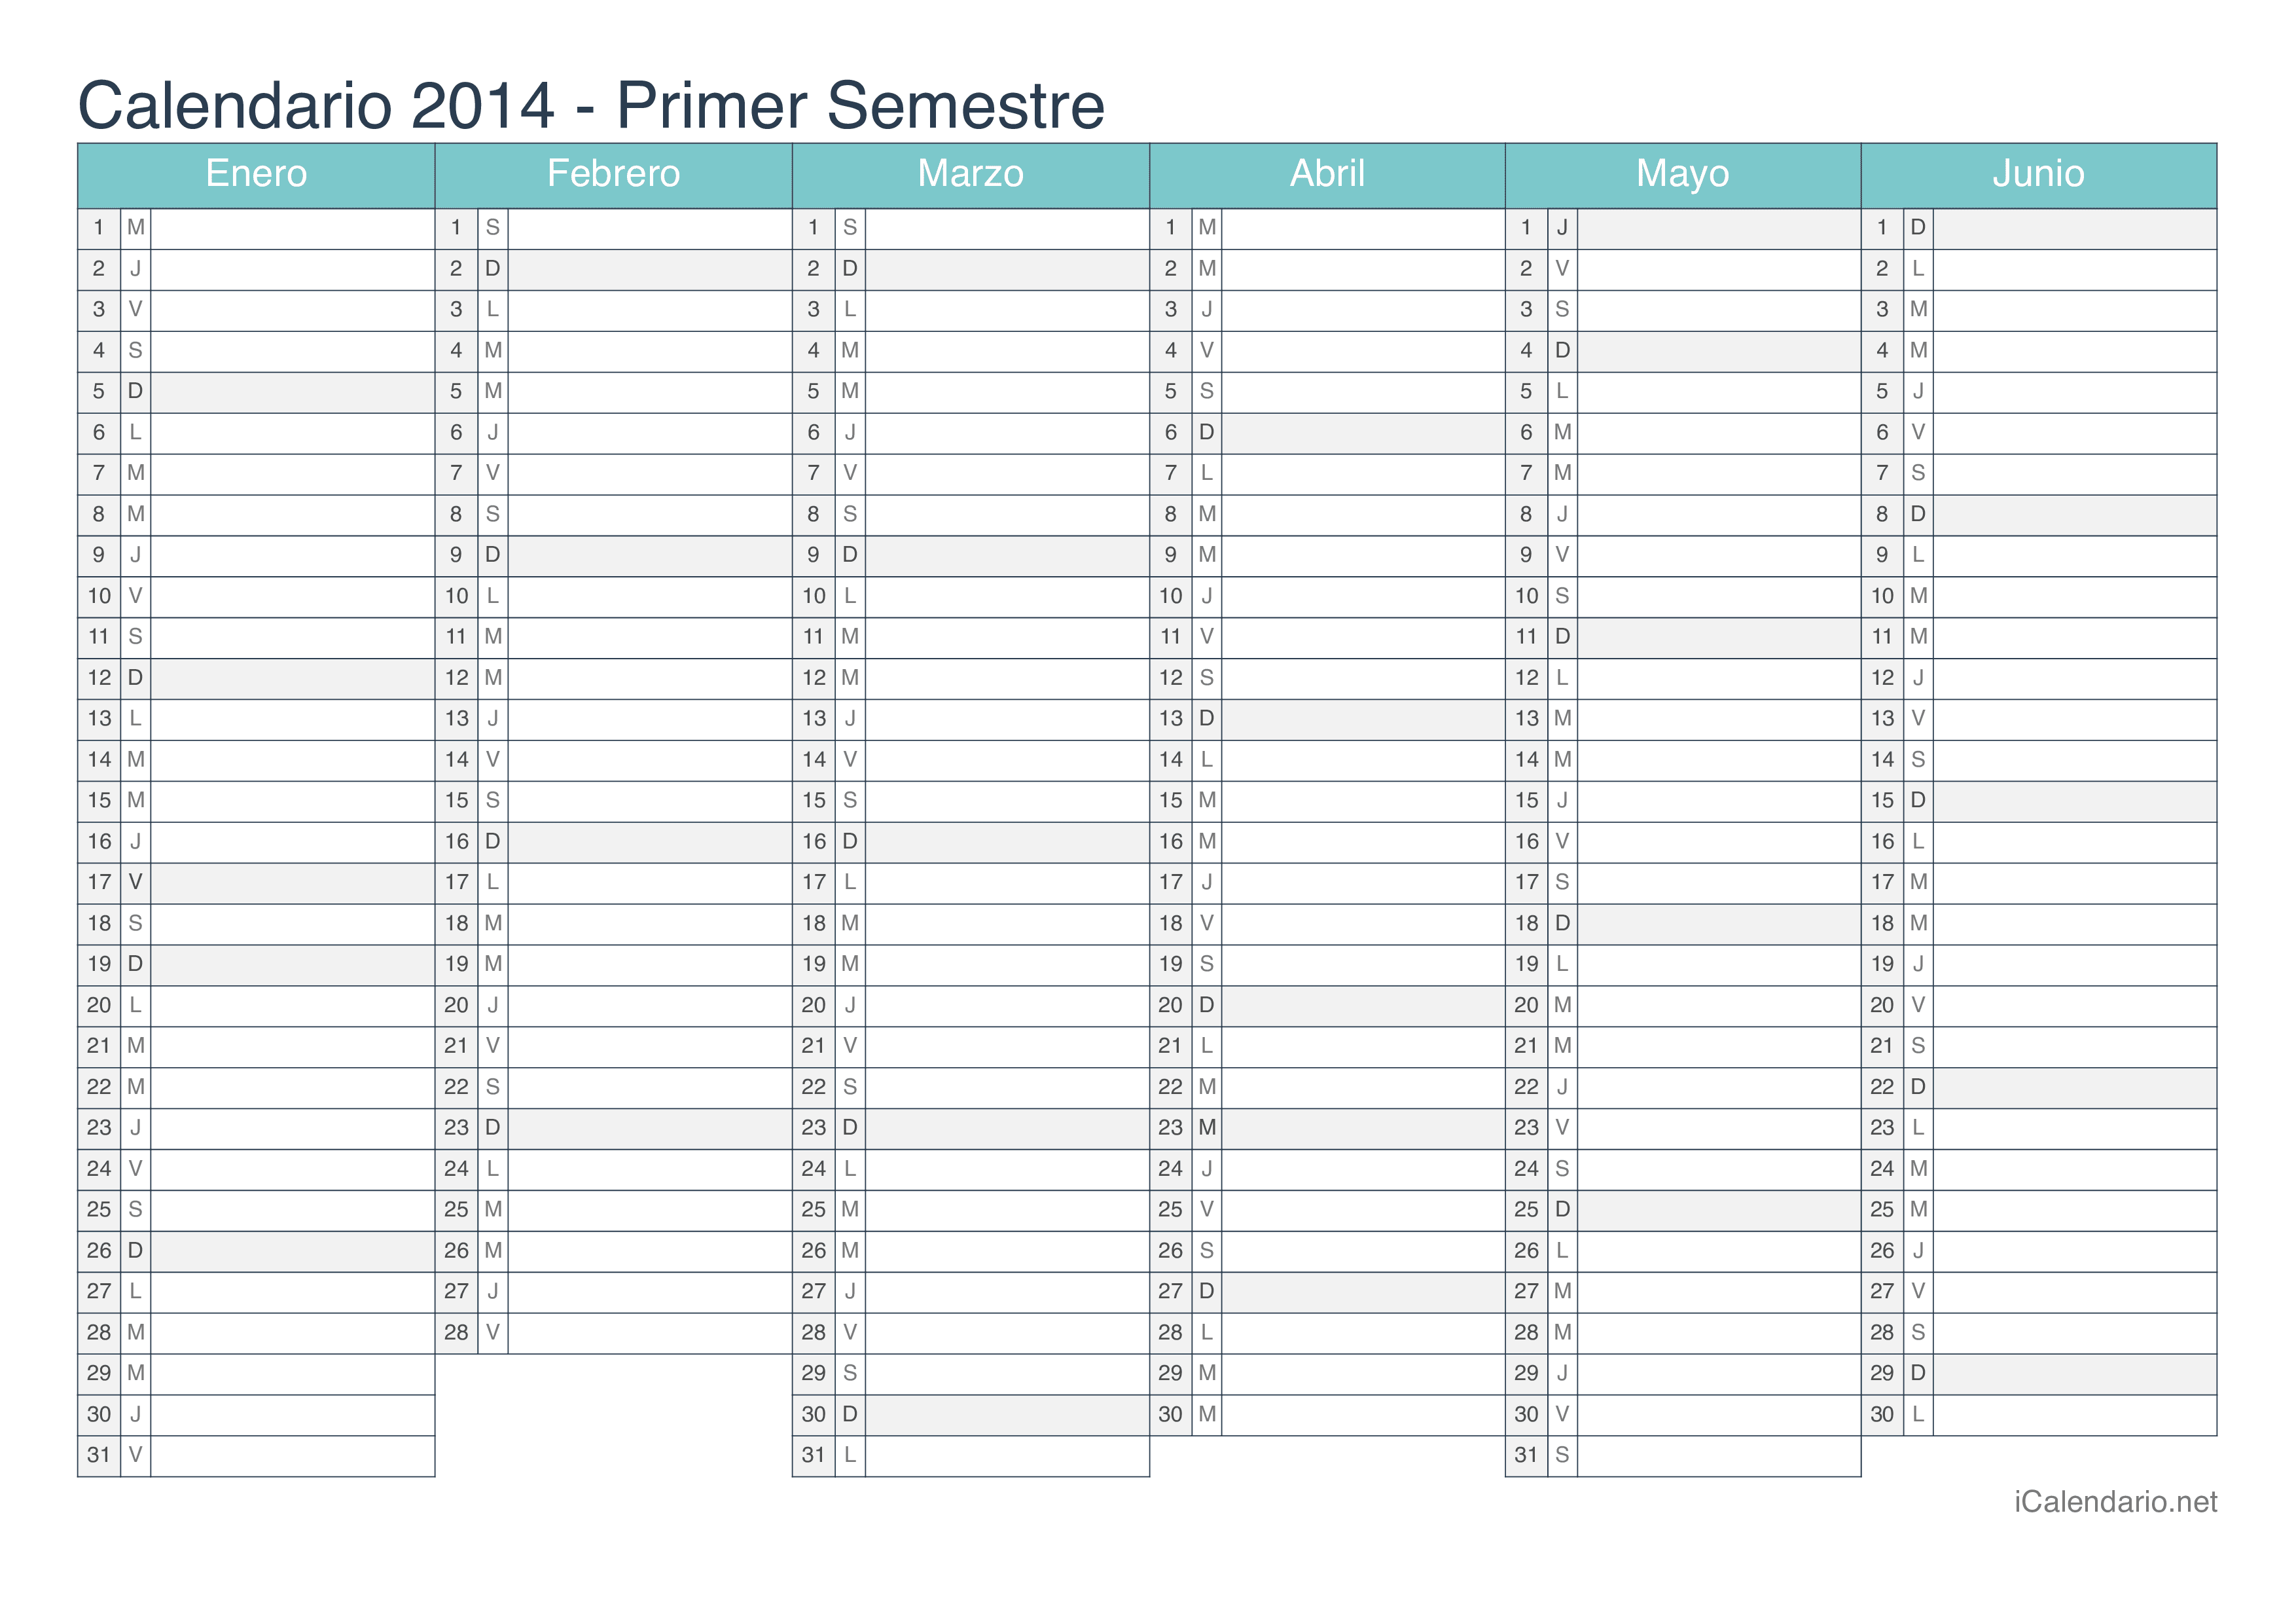 Calendario por semestre 2014 - Turquesa